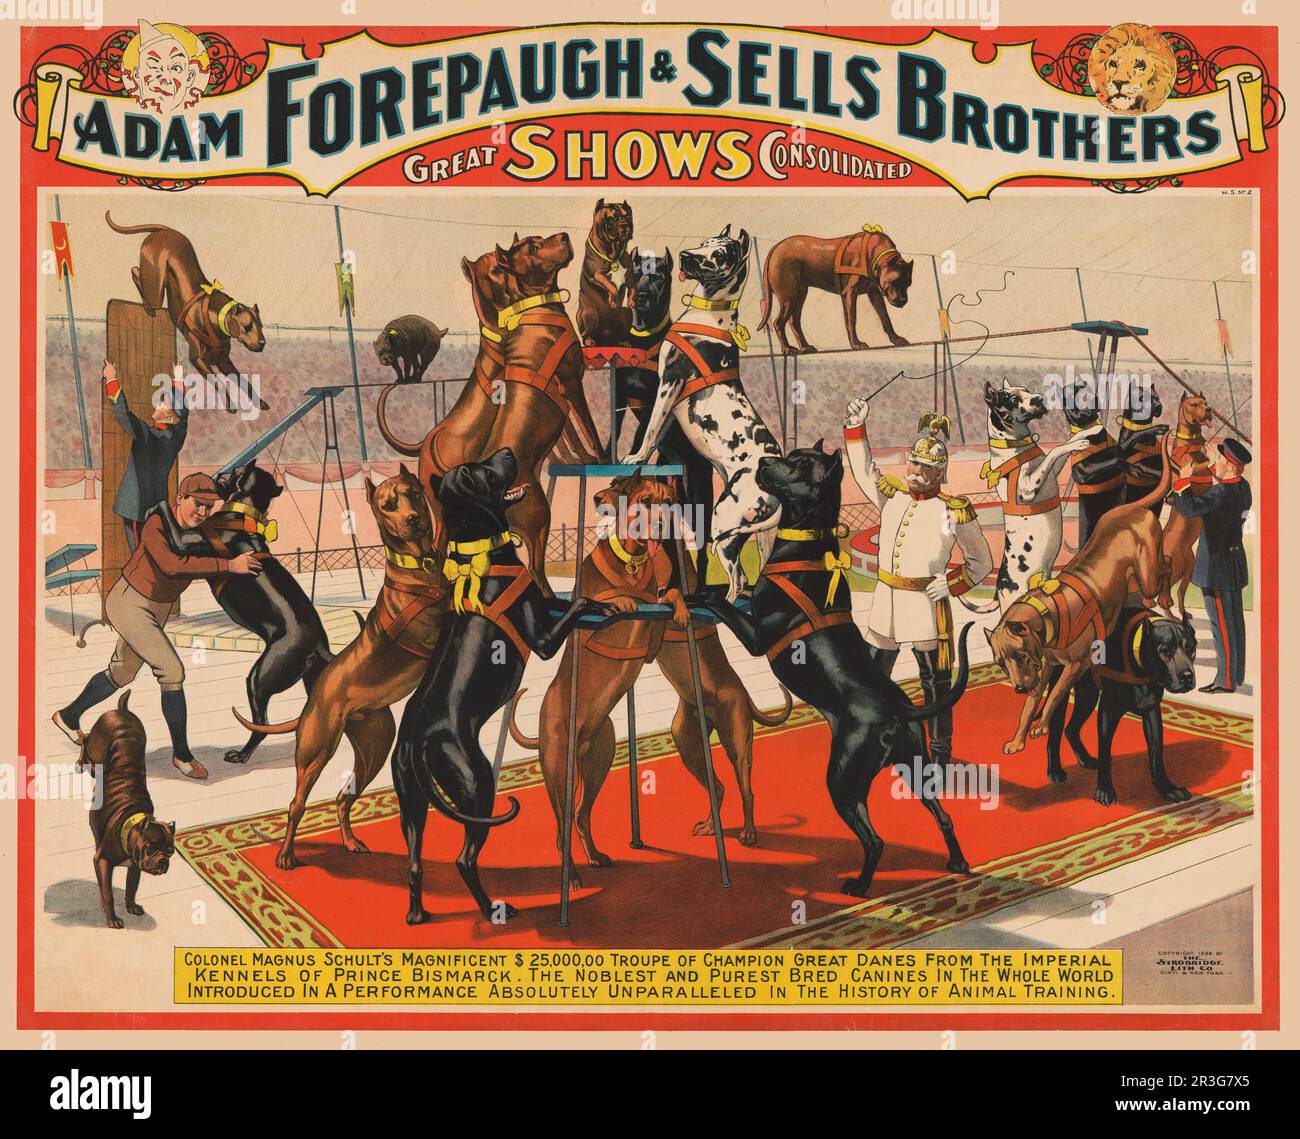 Das klassische Poster Adam Forepaugh und Sells Brothers Circus zeigt die Great Dänen, die um 1898 Uhr mit dem Trainer auftreten. Stockfoto